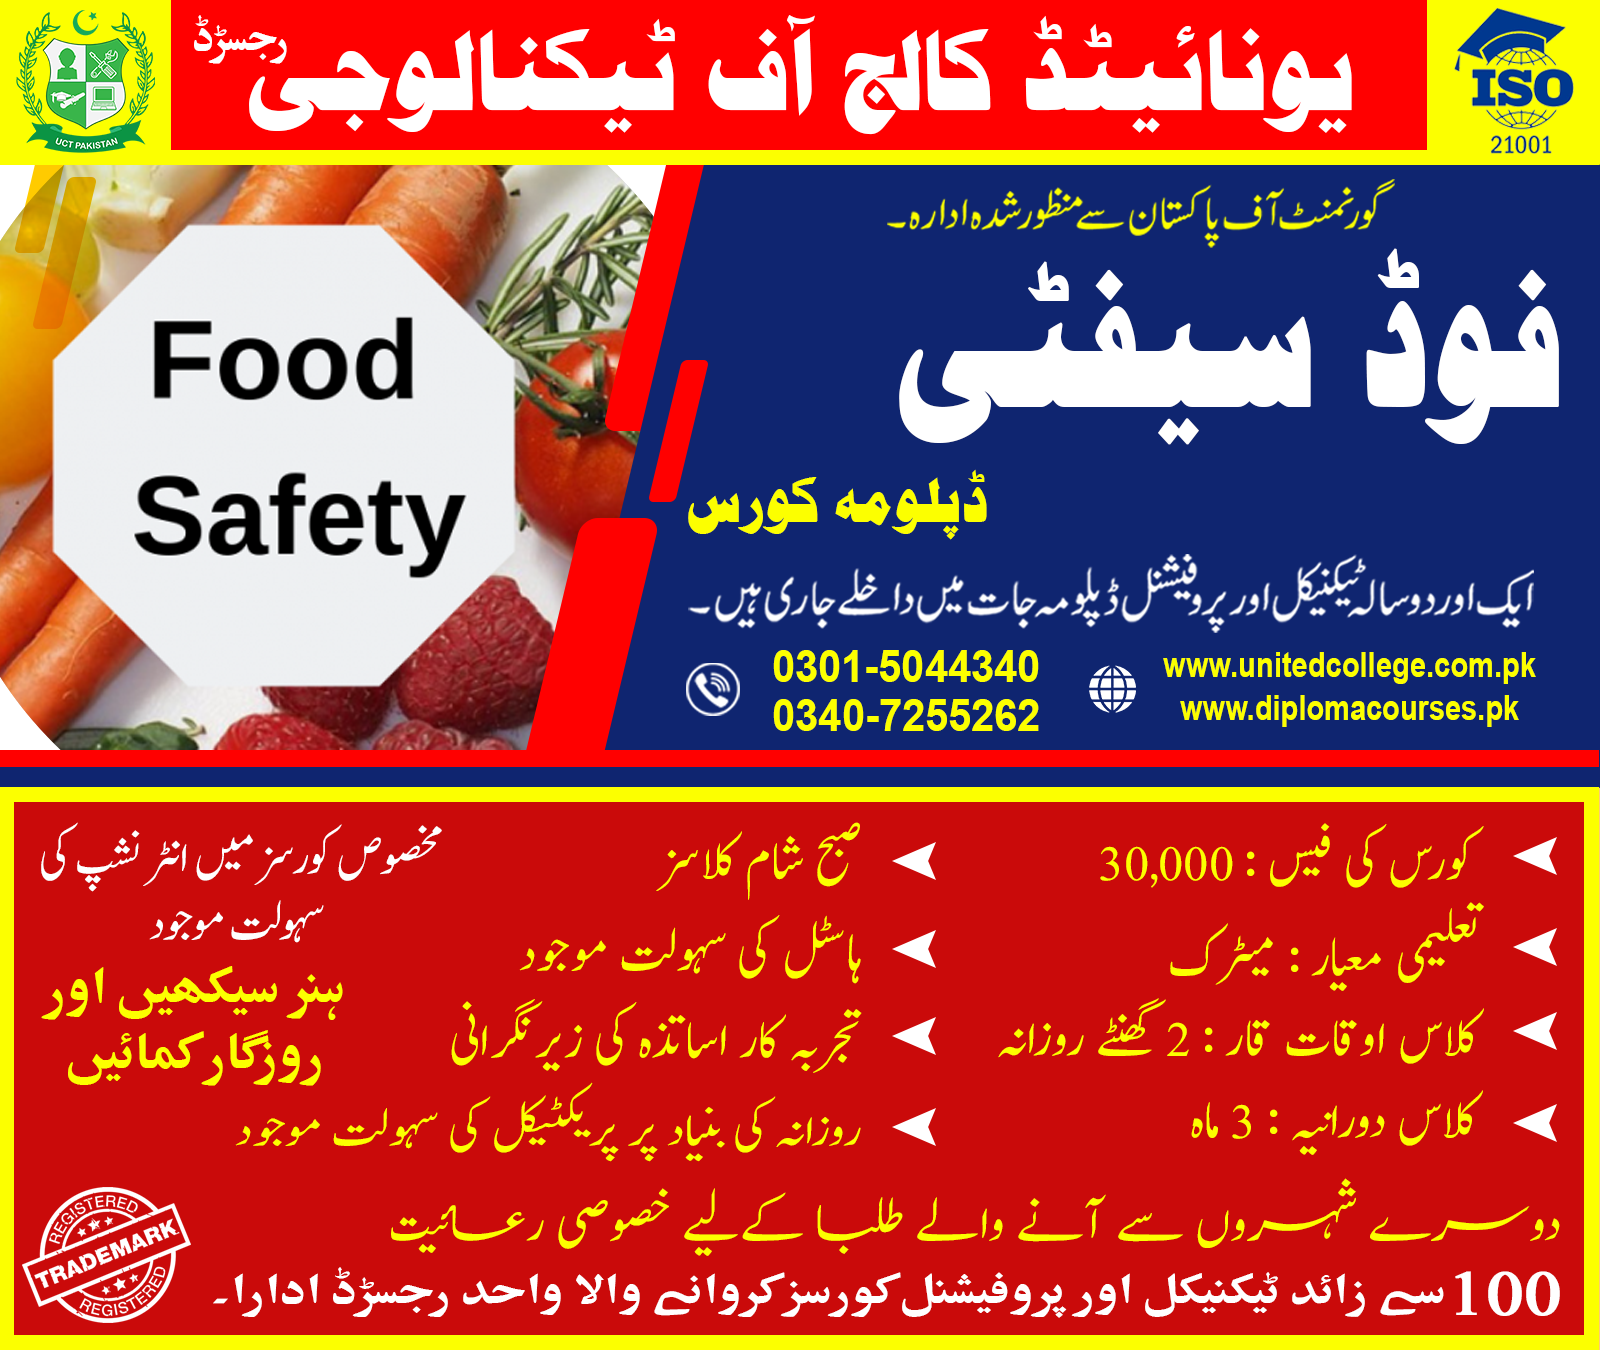 FOOD SAFETY COURSE IN RAWALPINDI ISLAMABAD PAKISTAN